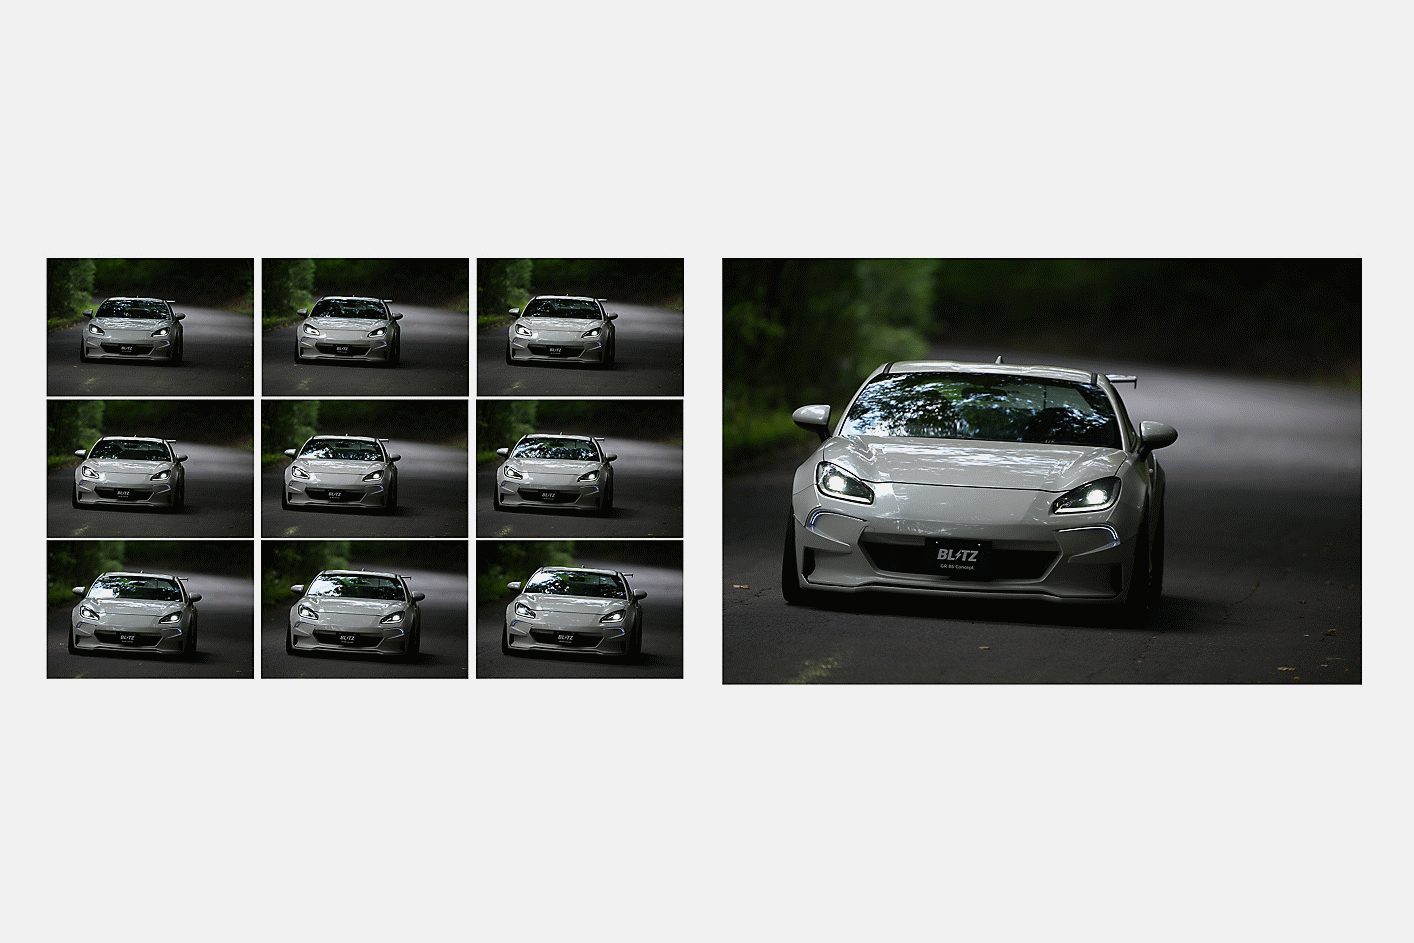 Imágenes de un automóvil capturadas de forma continua a 10 fps con enfoque AF/AE